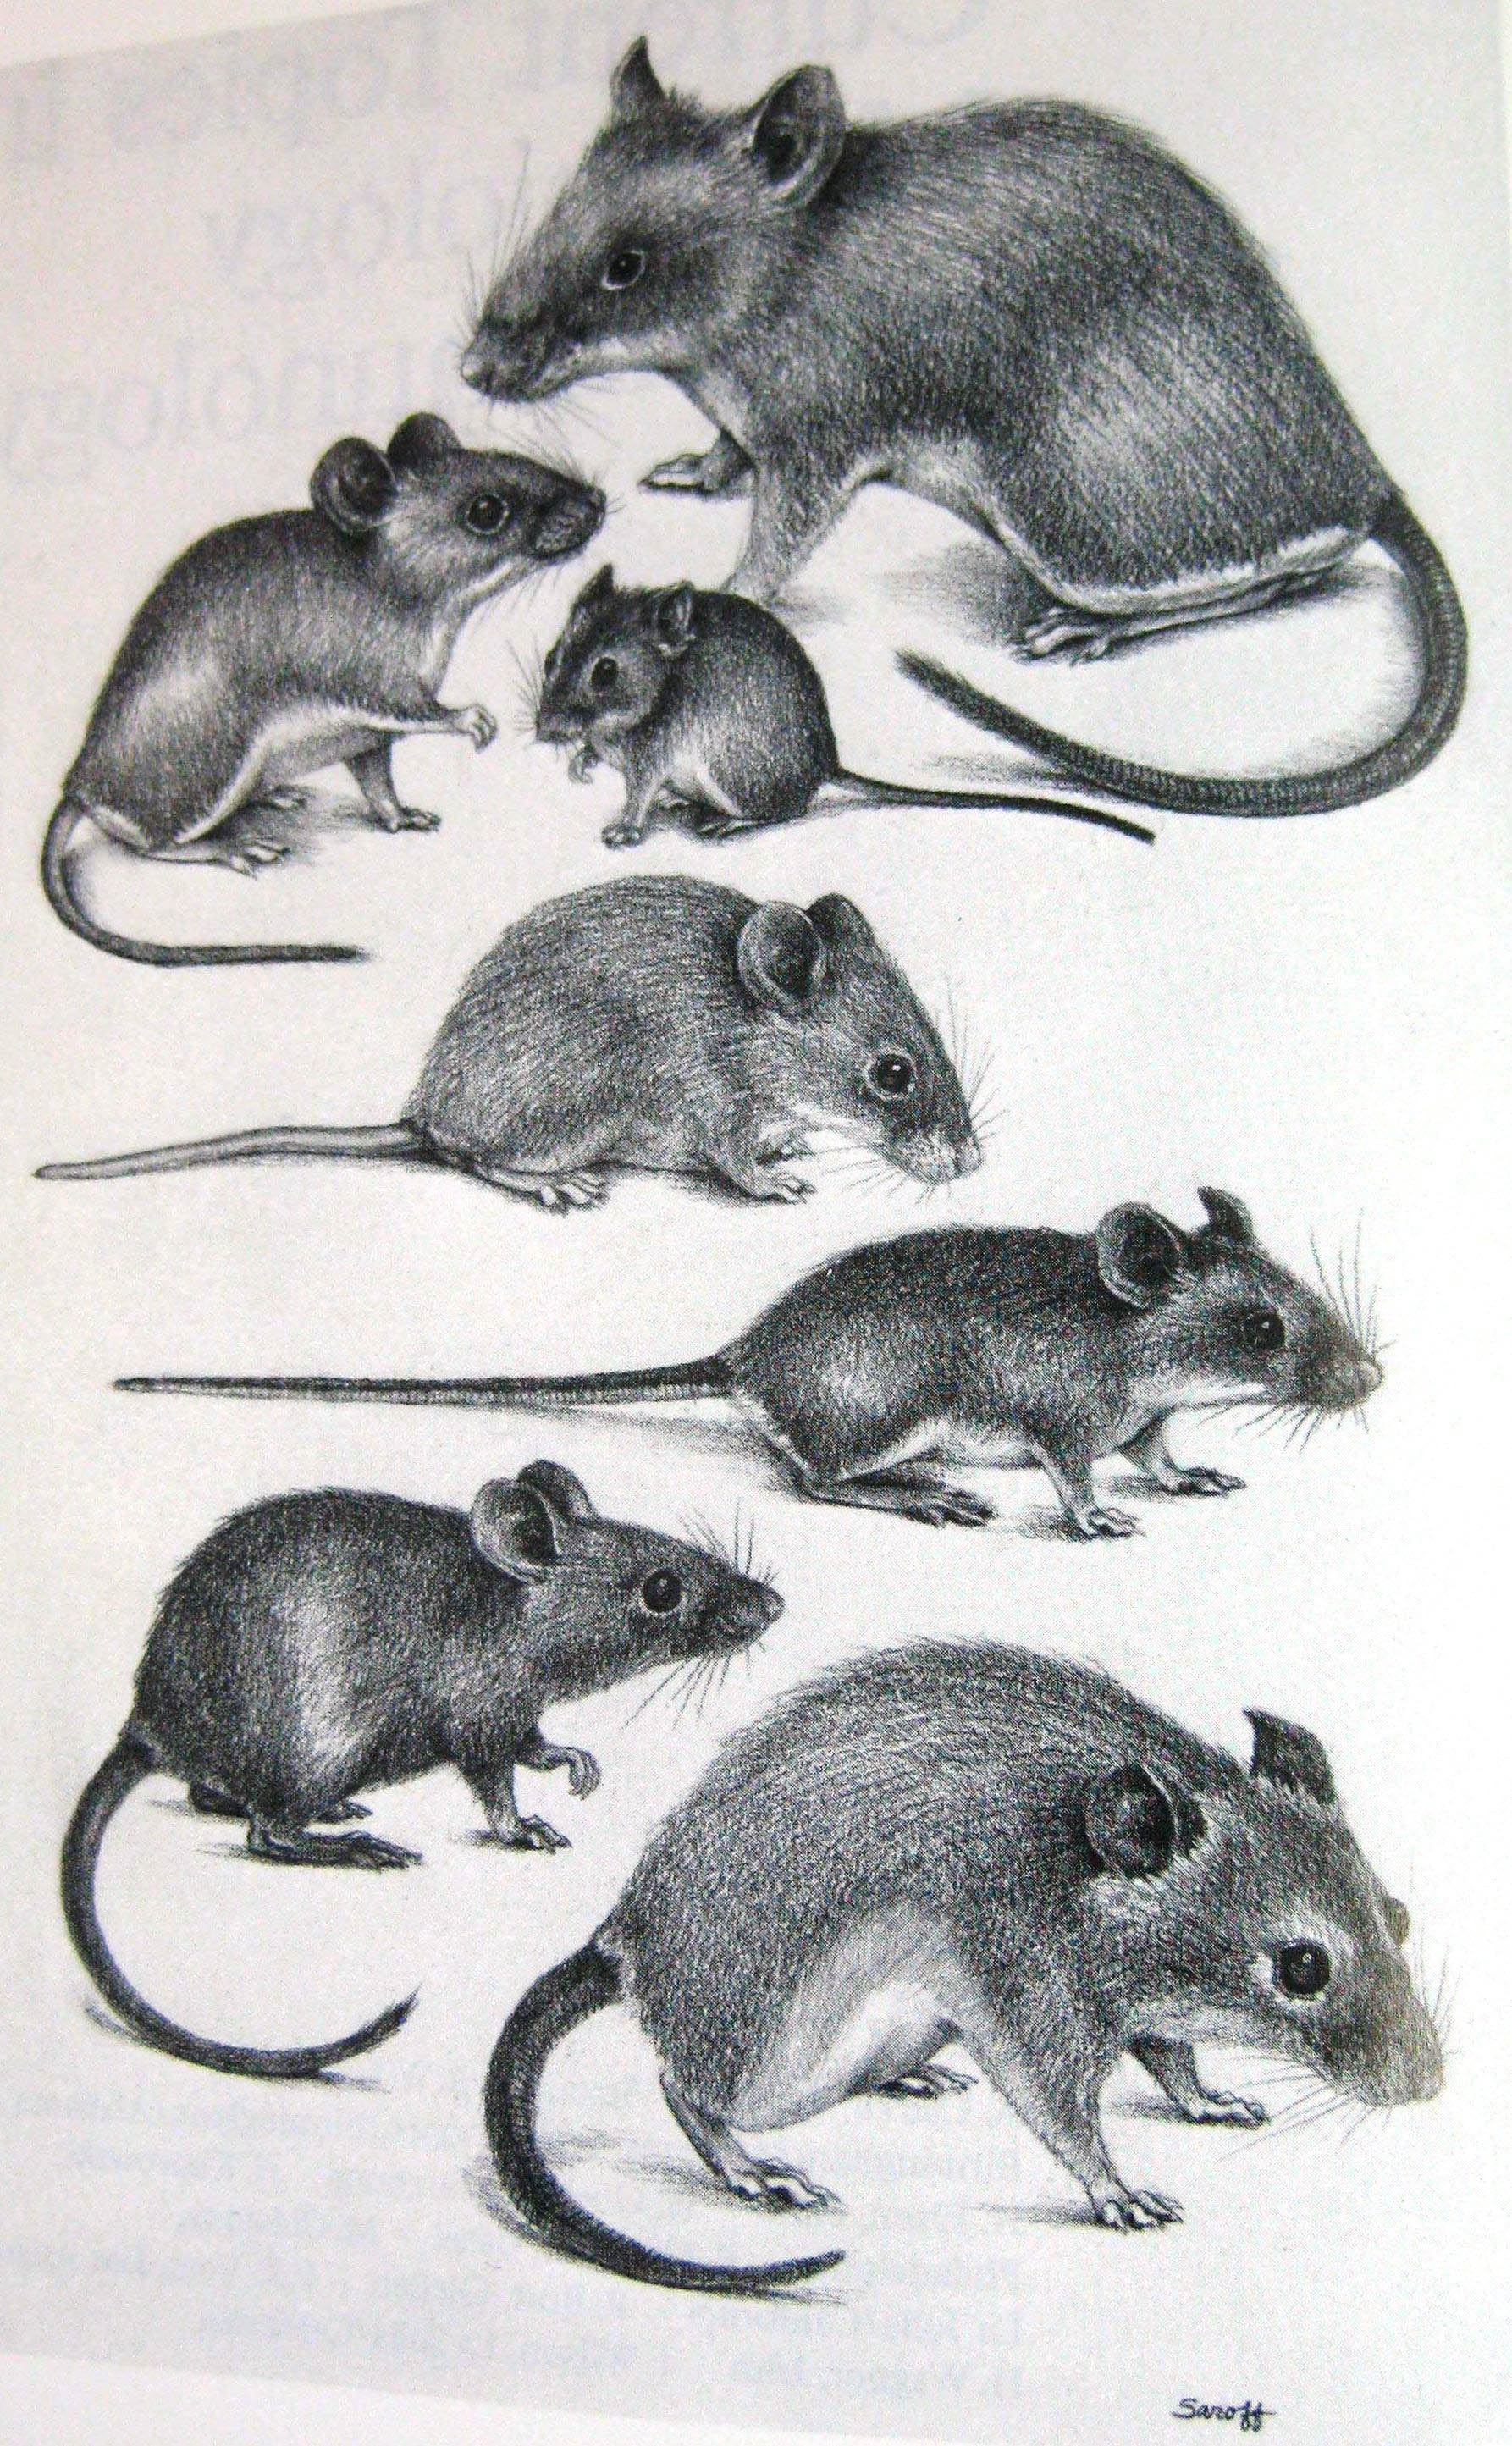 Illustration of wild mice